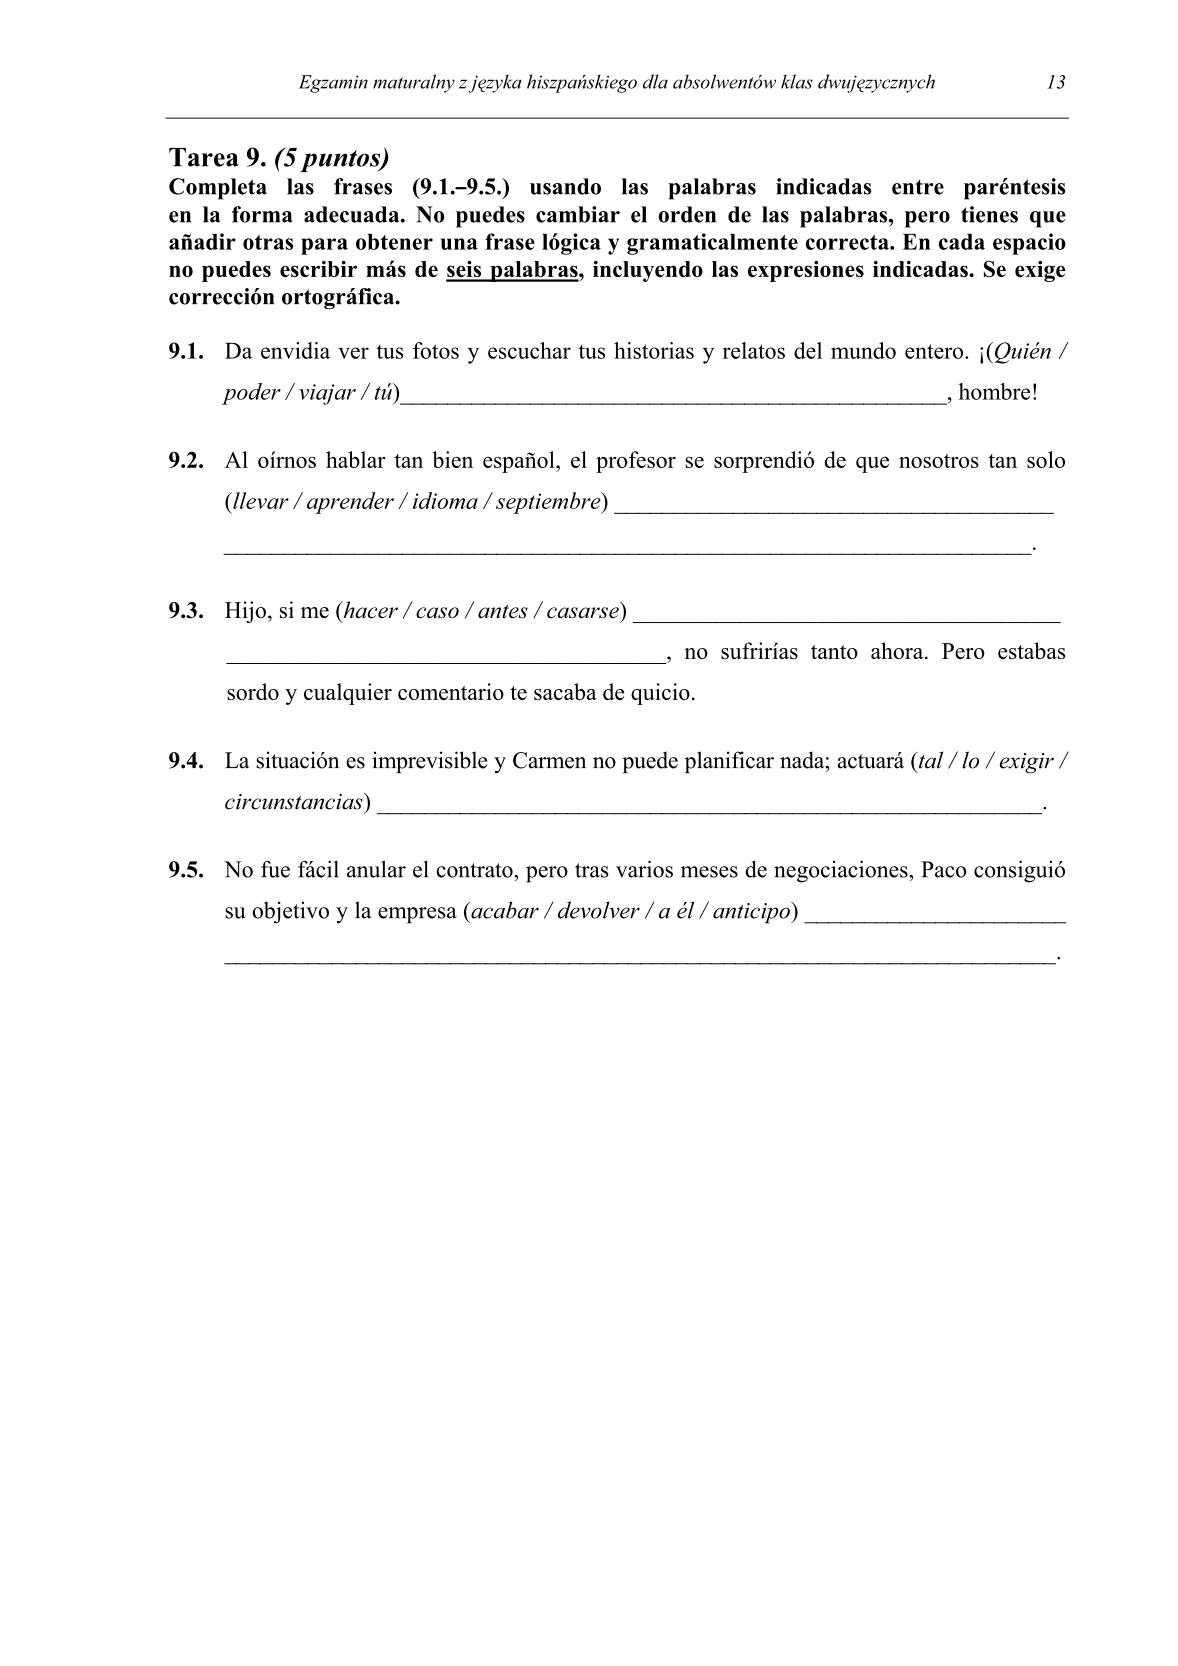 pytania-hiszpanski-dla-absolwentow-klas-dwujezycznych-matura-2014-str.13